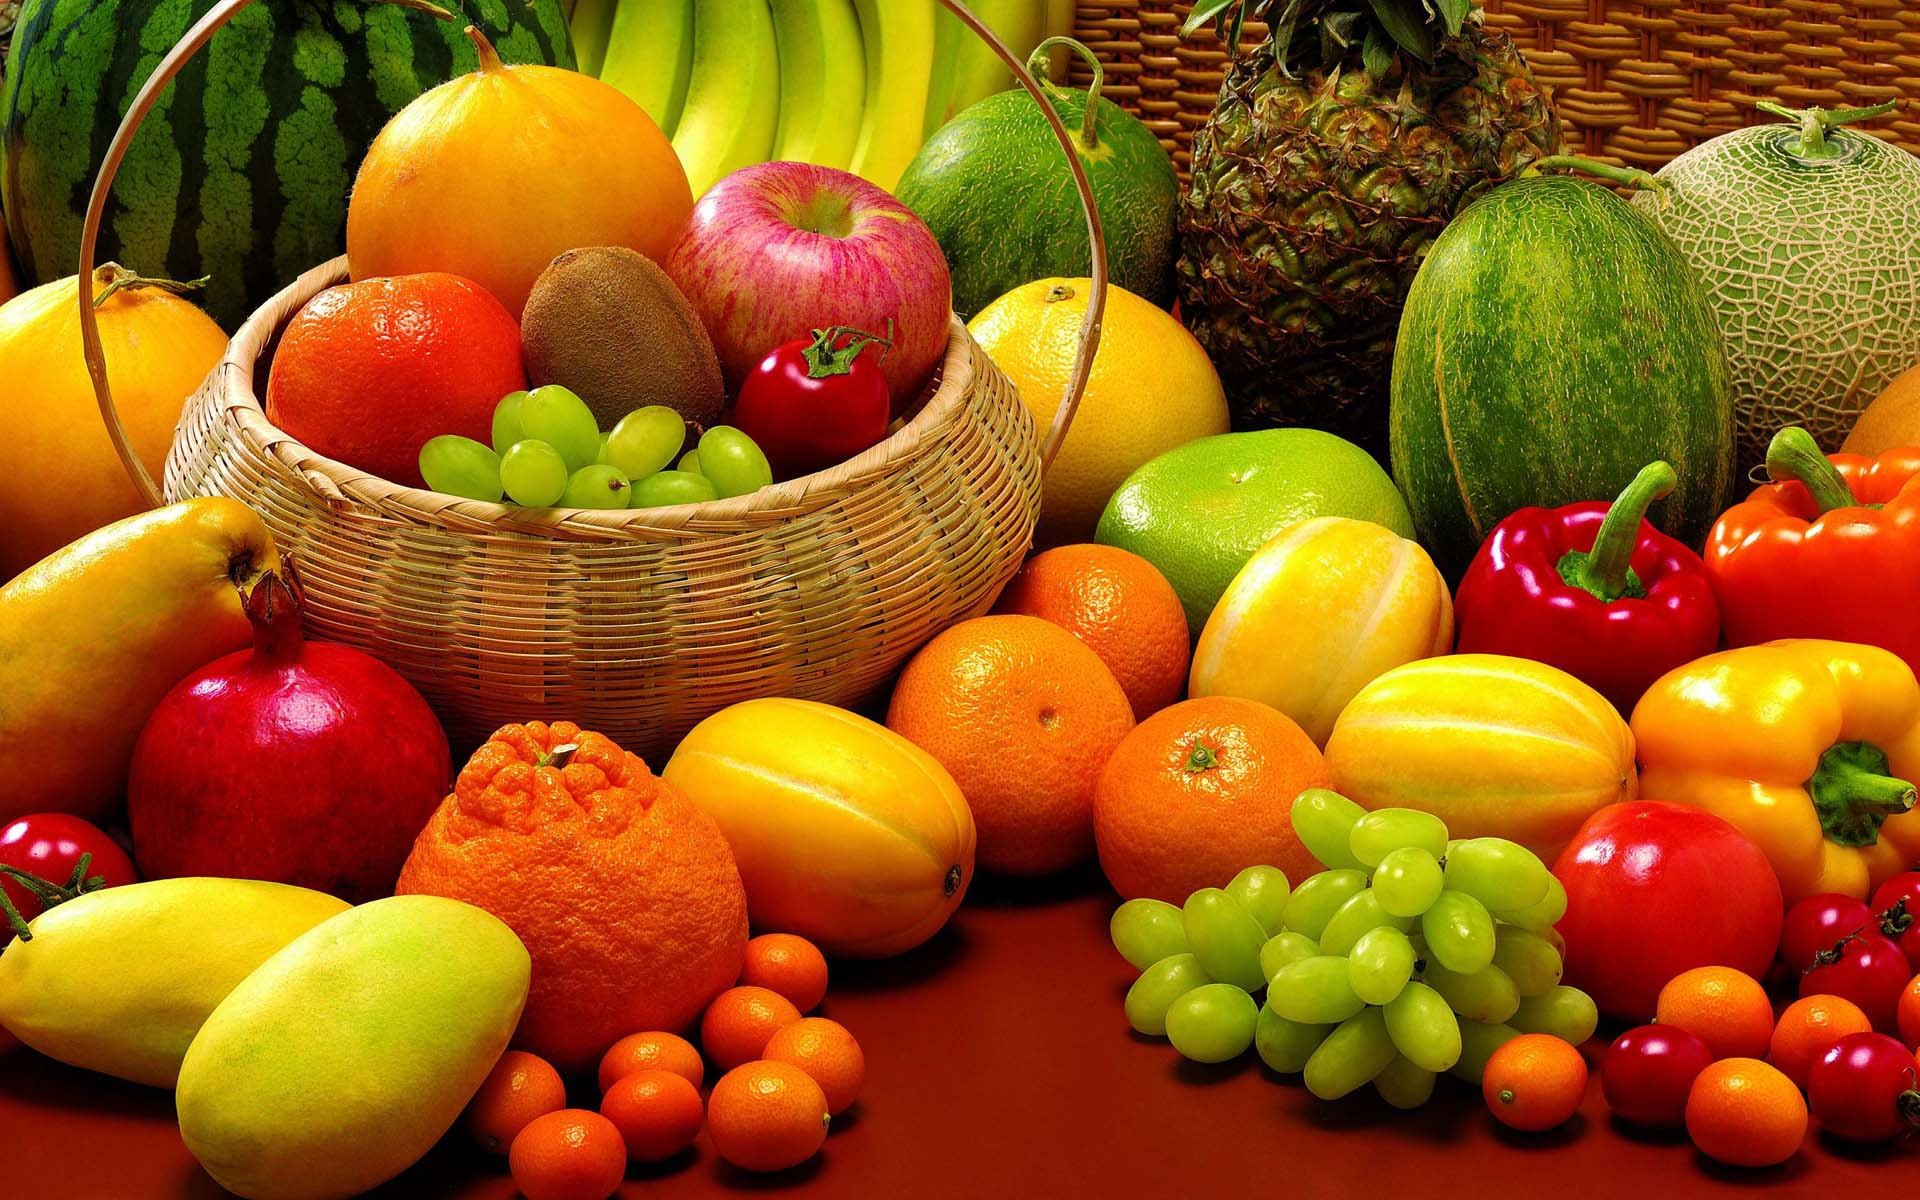 Tansiyonu Düşüren Sebze ve Meyveler Nelerdir?